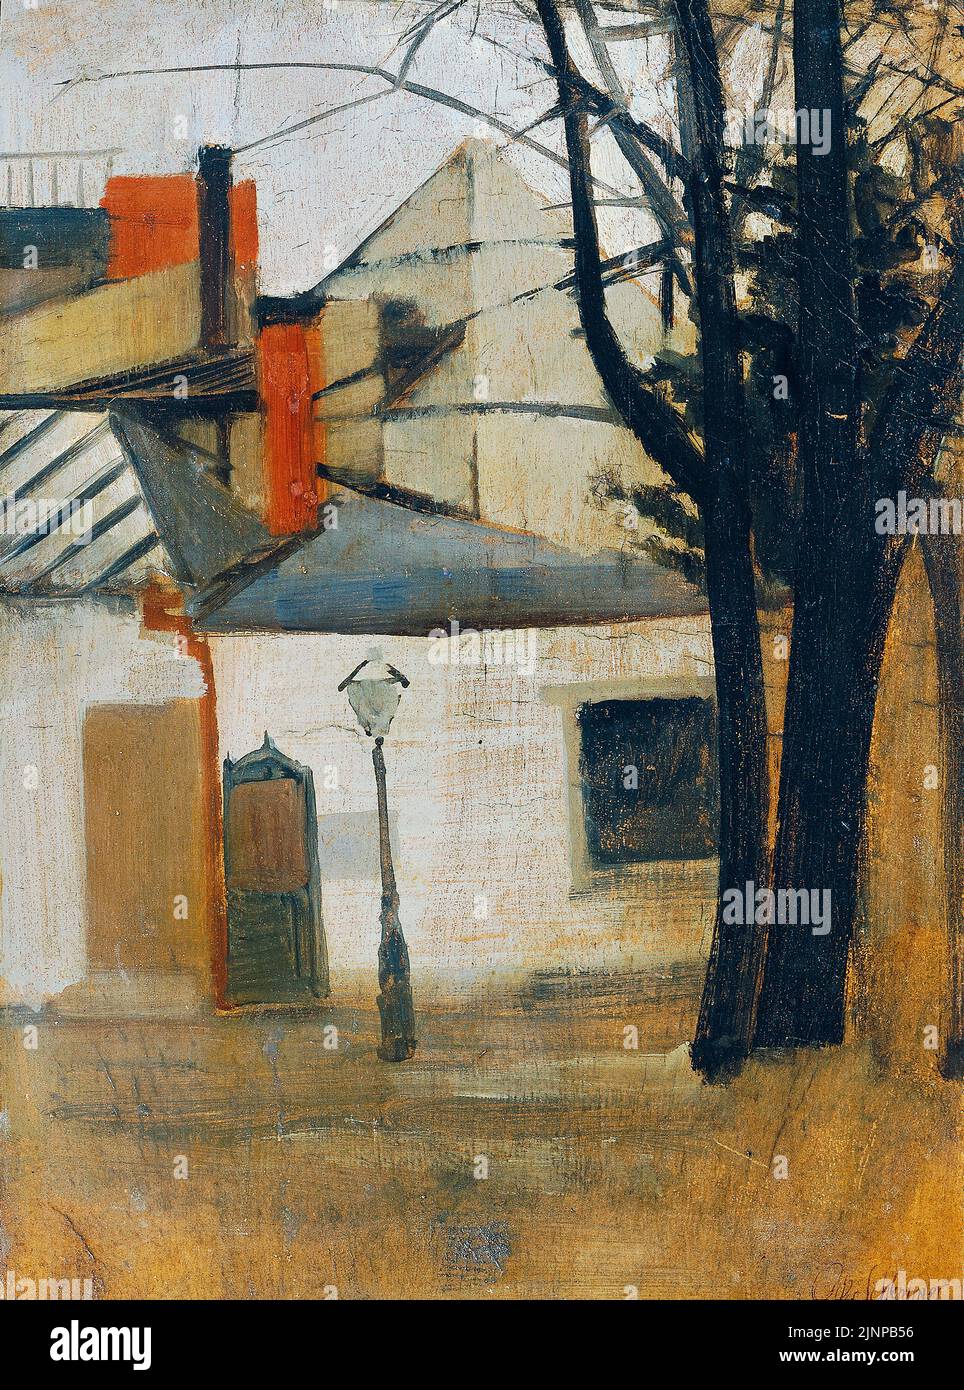 Oskar Schlemmer, Gassenwinkel, peinture à l'huile sur carton, vers 1911 Banque D'Images